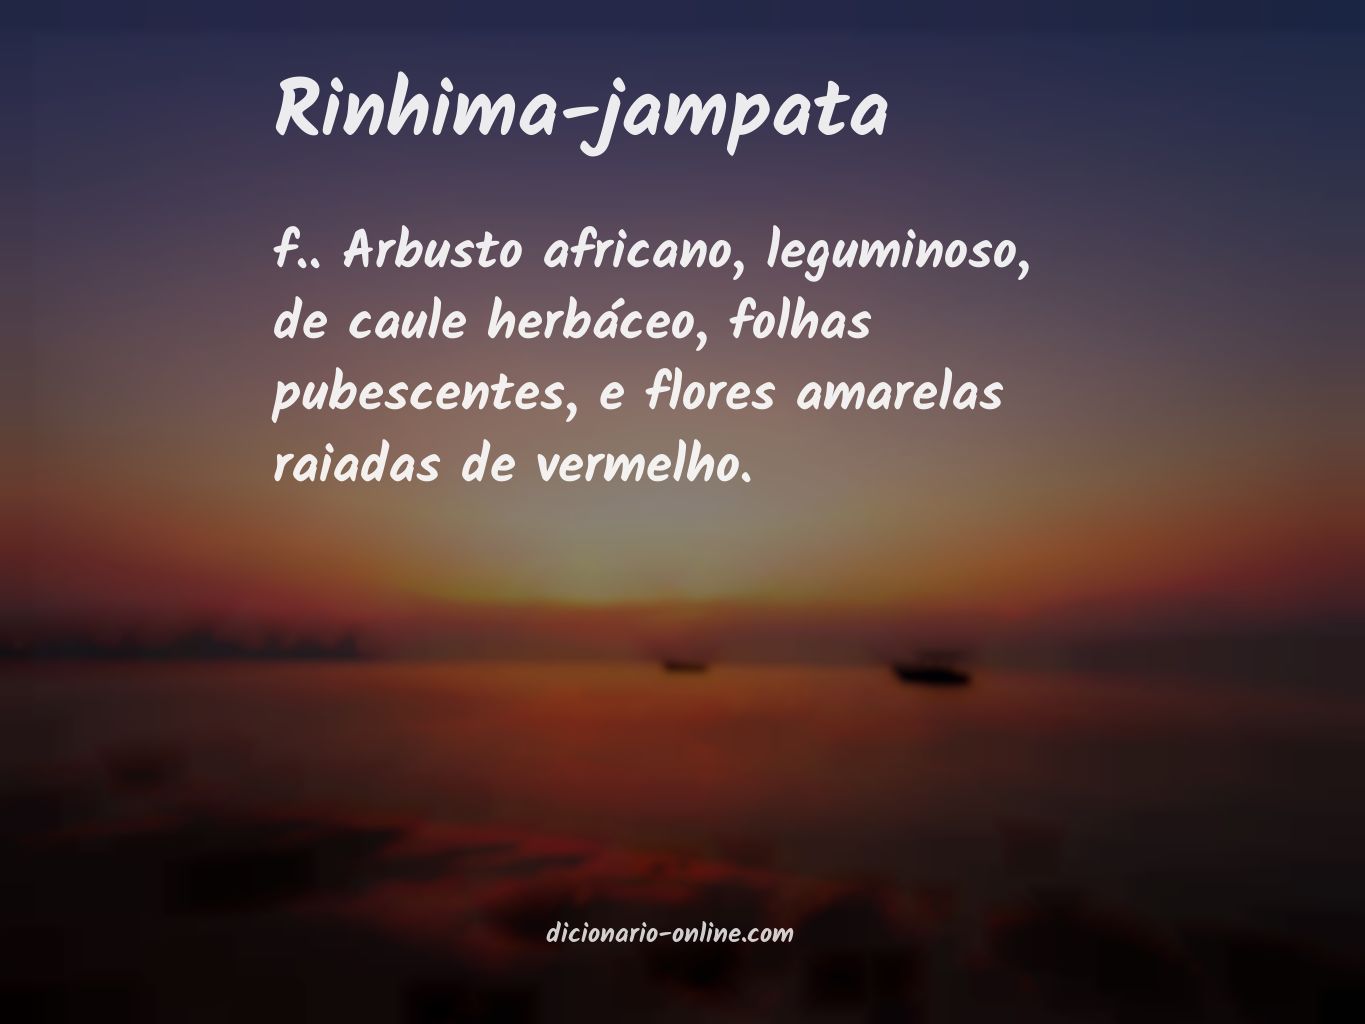 Significado de rinhima-jampata